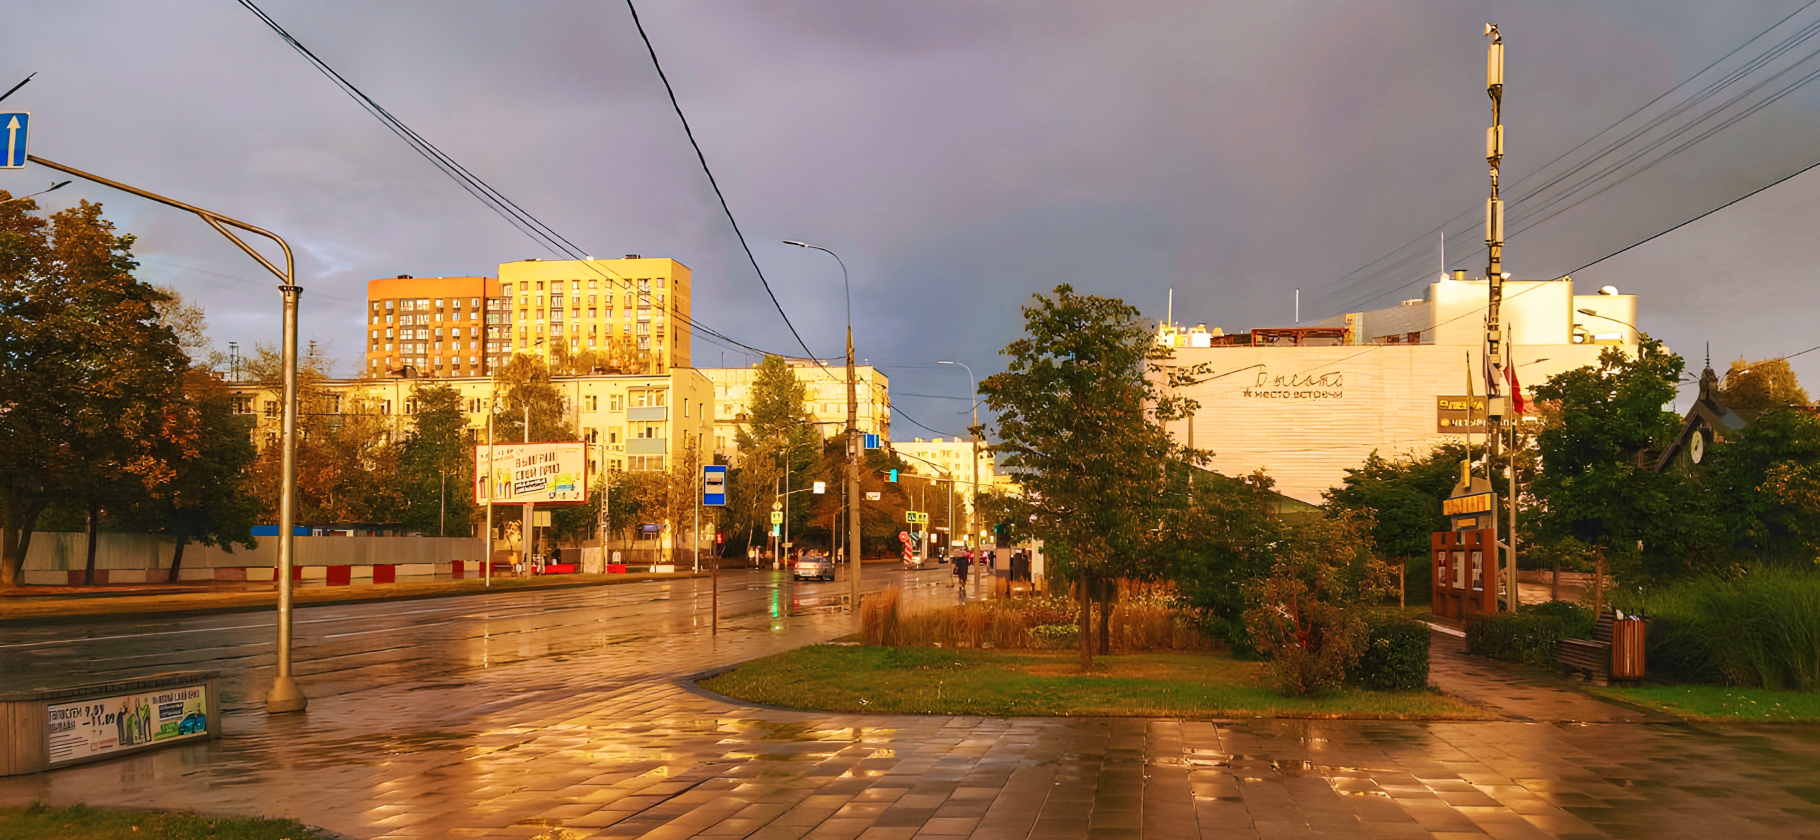 «Иногда встречаются пугающие контрасты»: как живется в московском районе Кузьминки